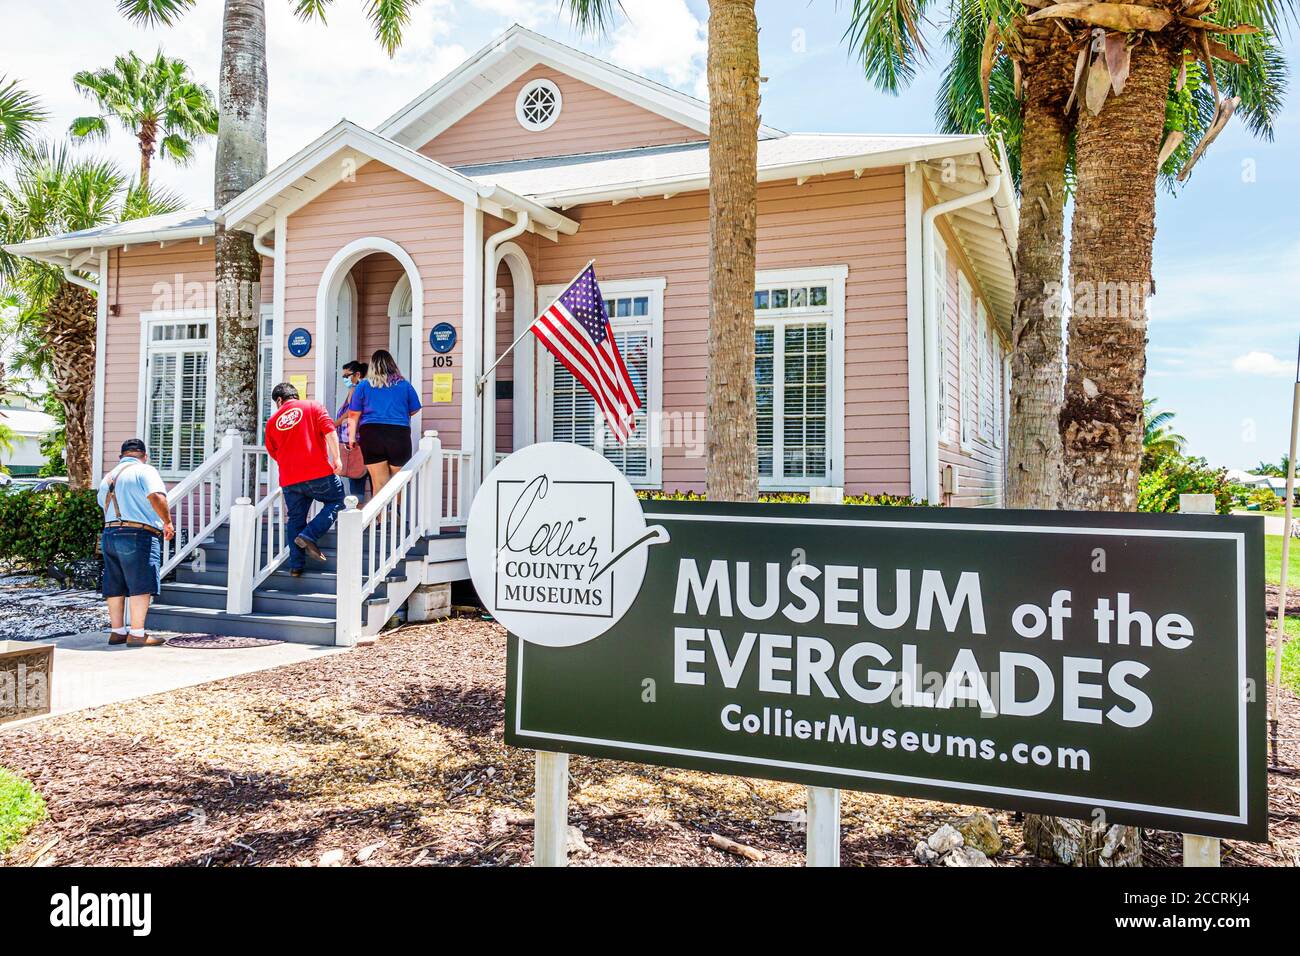 Everglades City Florida, Contea di Collier, Museo delle Everglades, lavanderia Old Everglades, sito storico, museo di storia e cultura, esterno edificio, uomo Foto Stock